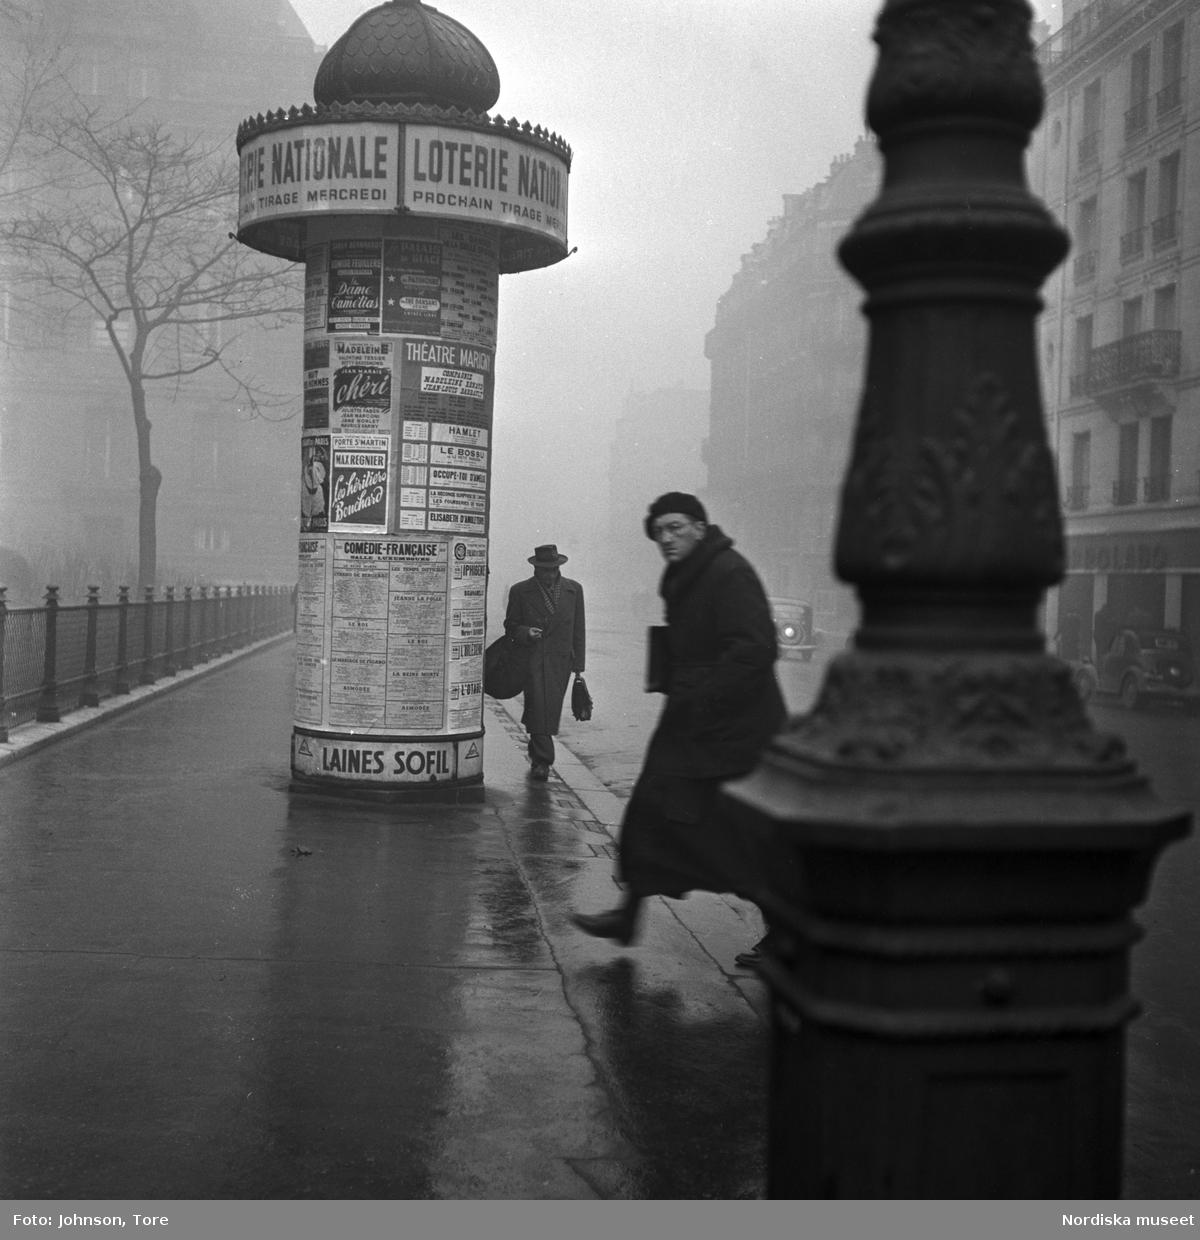 Fotgängare på en gata i Paris, annonspelare i bakgrunden.